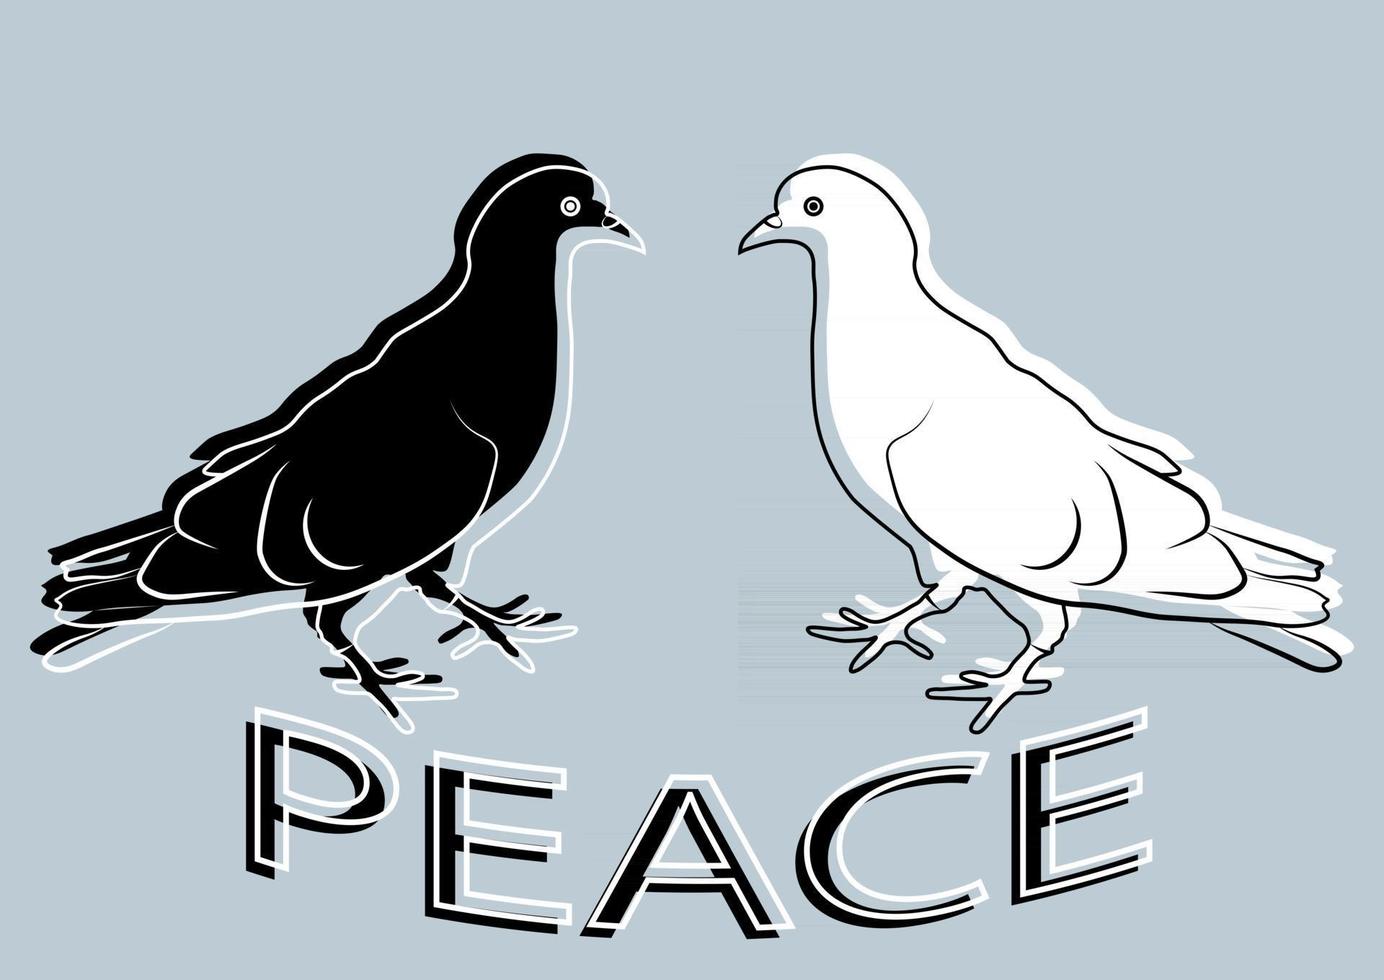 paloma de la paz icono. concepto de paz. concepto de pacifismo. dos palomas en color blanco y negro. paloma de contorno. se puede utilizar para plantillas creativas. paloma en estilo plano, aislado sobre fondo gris vector